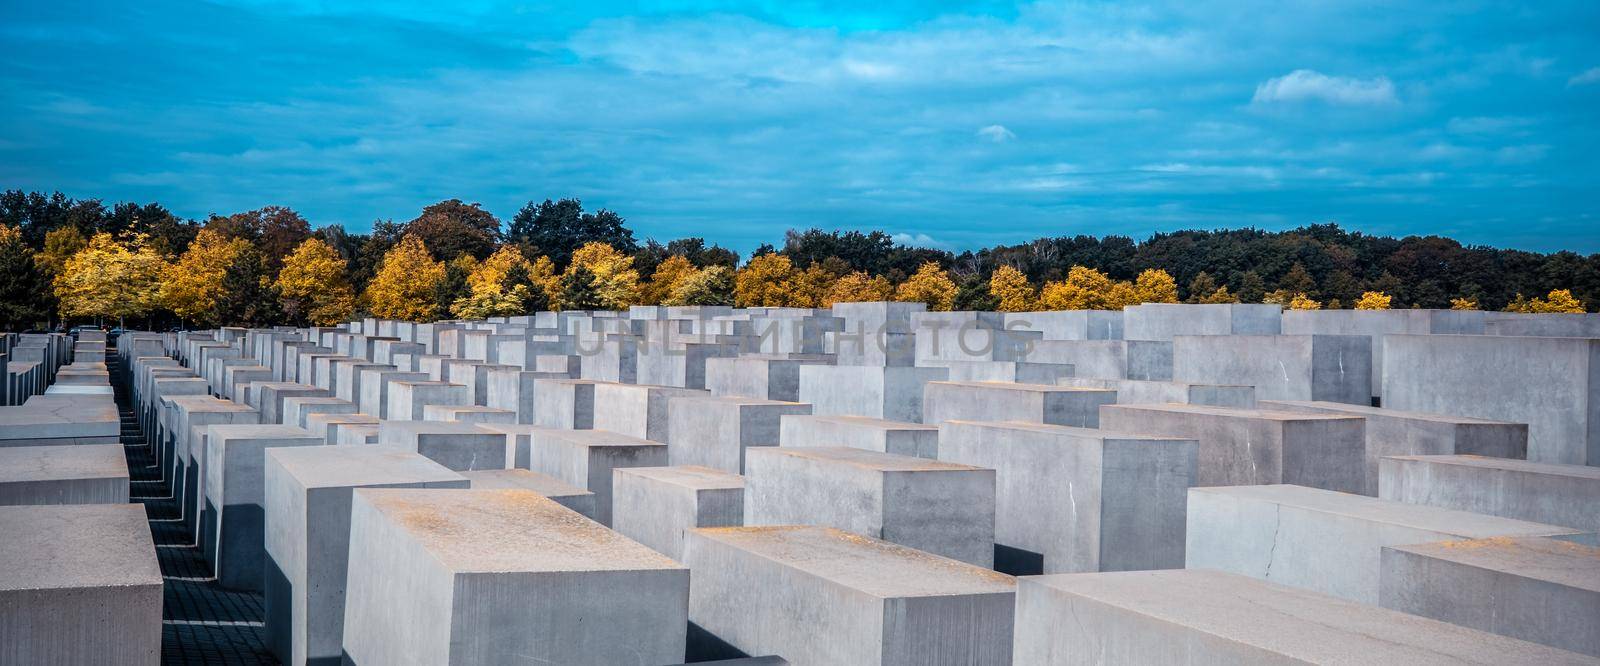 Berlin, Germany - 20 September 2019: Memorial to the Murdered Jews of Europe in Berlin, Germany